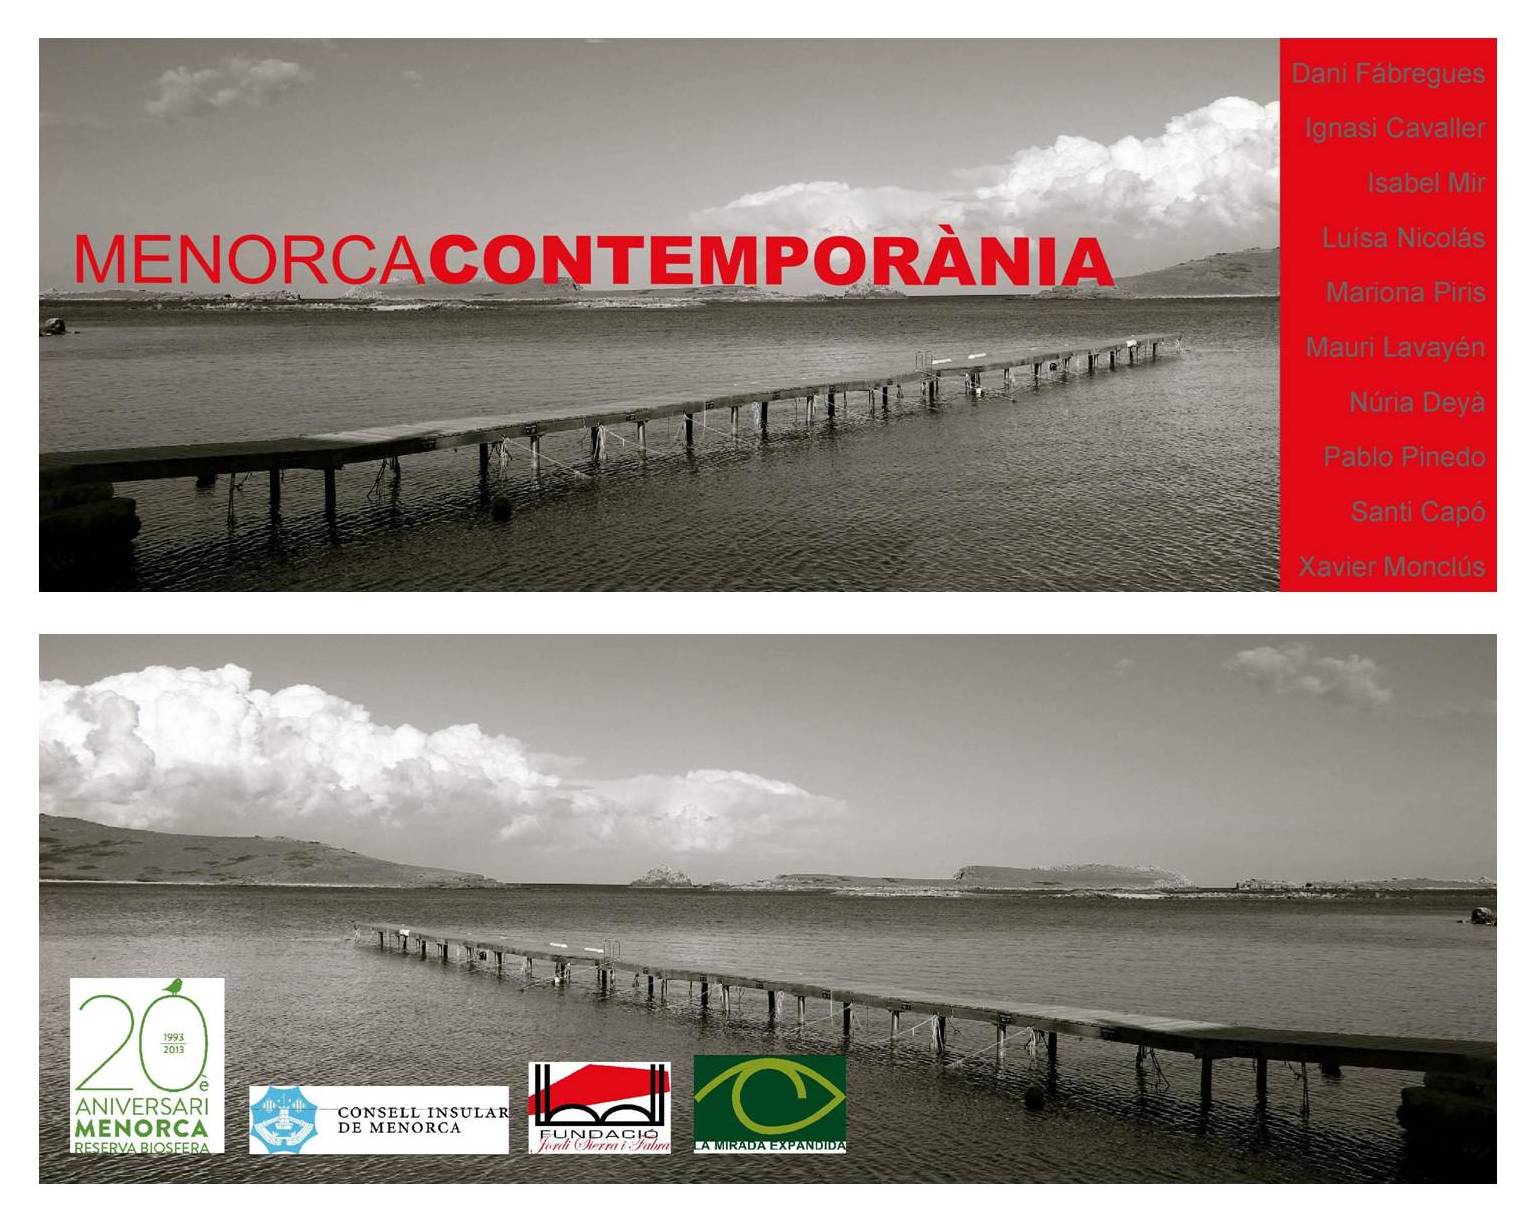 Contemporary Menorca exhibition in Barcelona